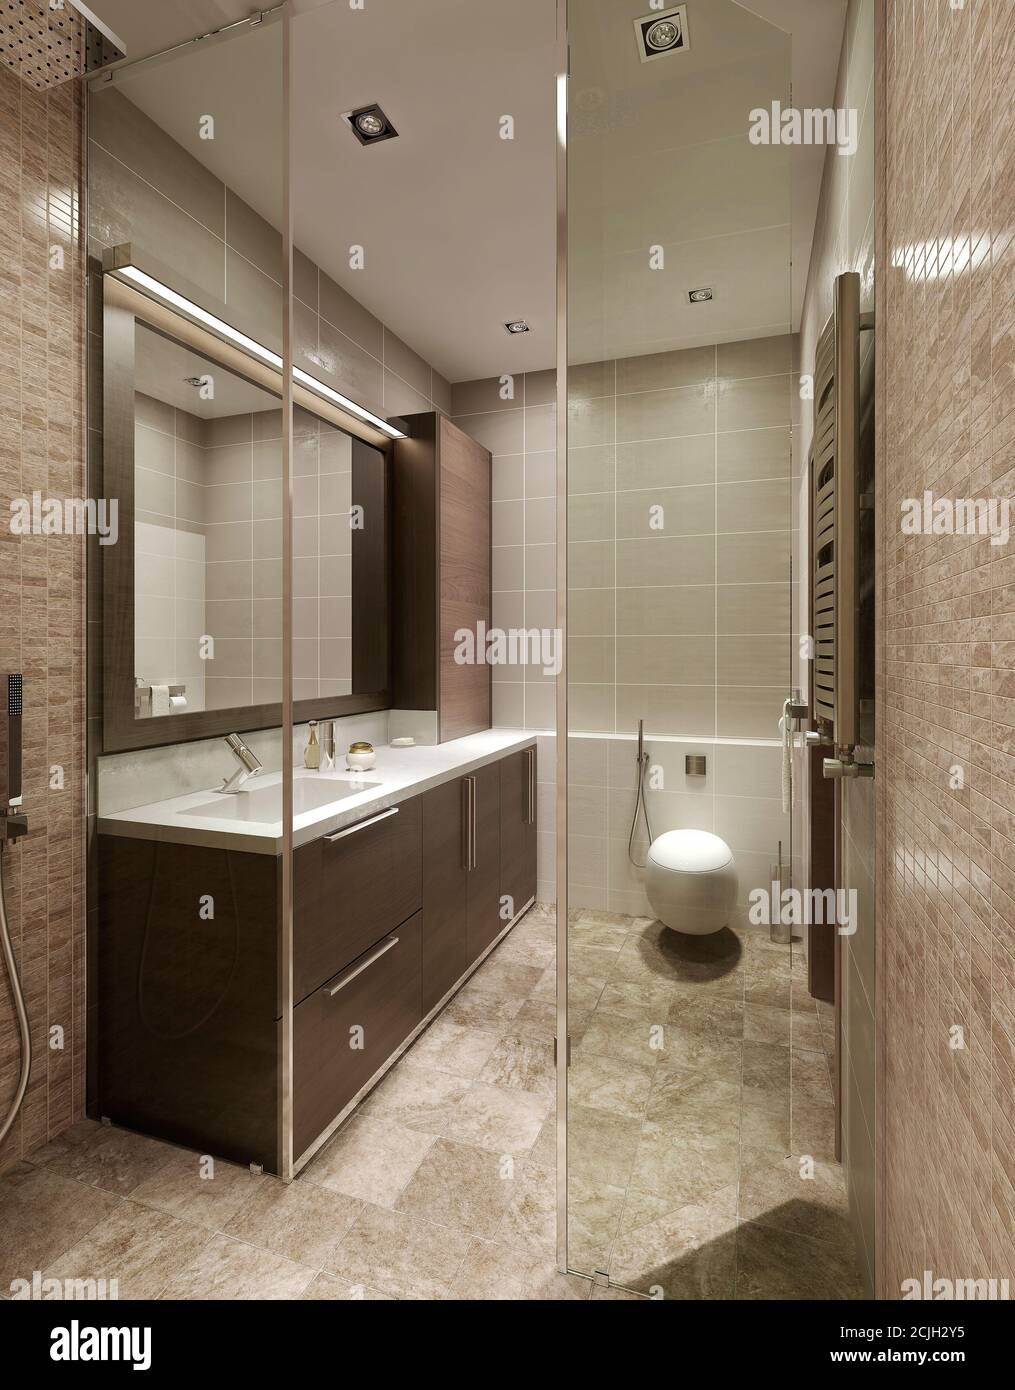 Stile costruttivista del bagno, immagini 3d Foto Stock